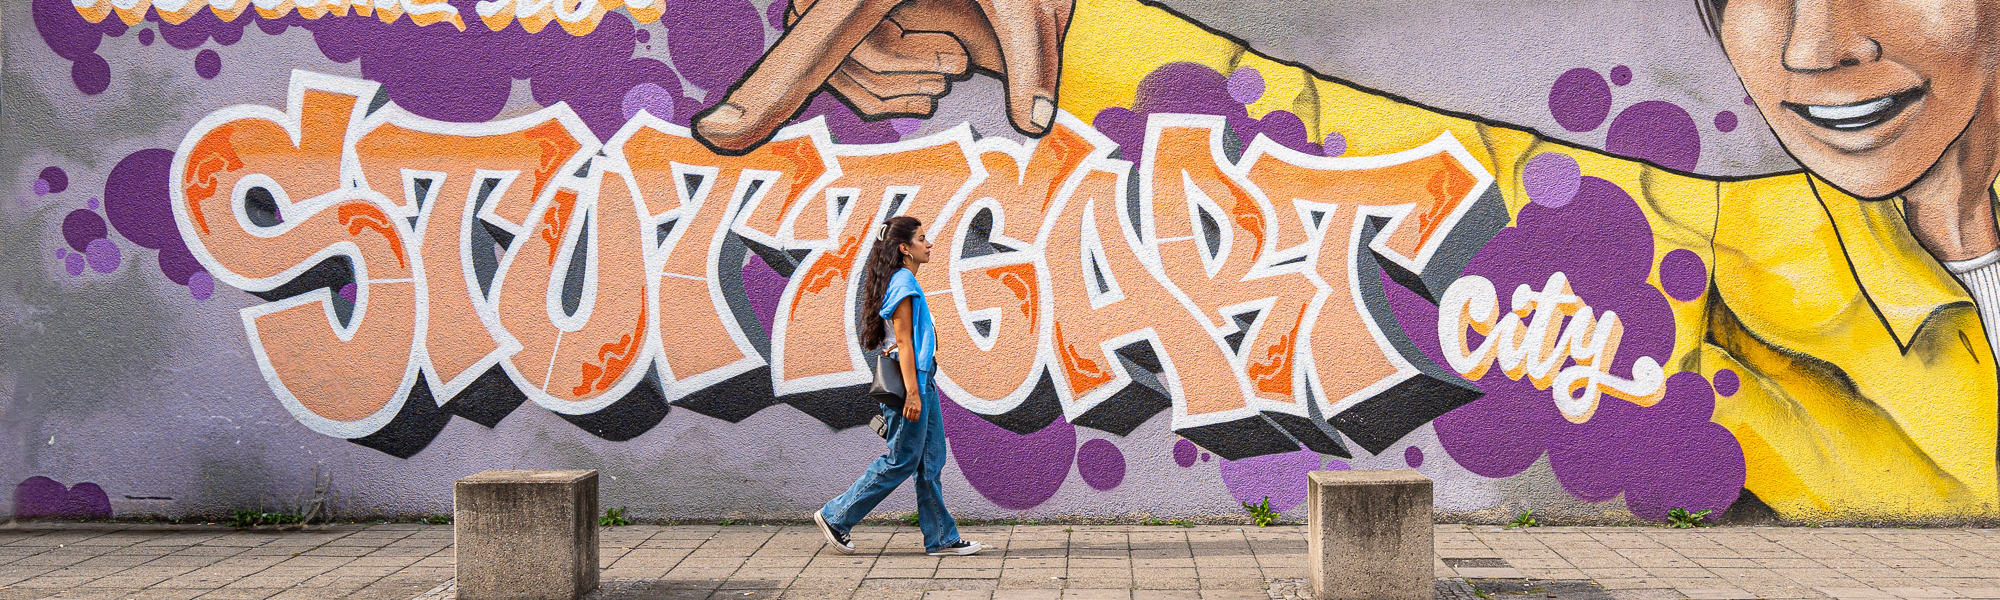 Graffiti con la scritta "Welcome to Stuttgart City".